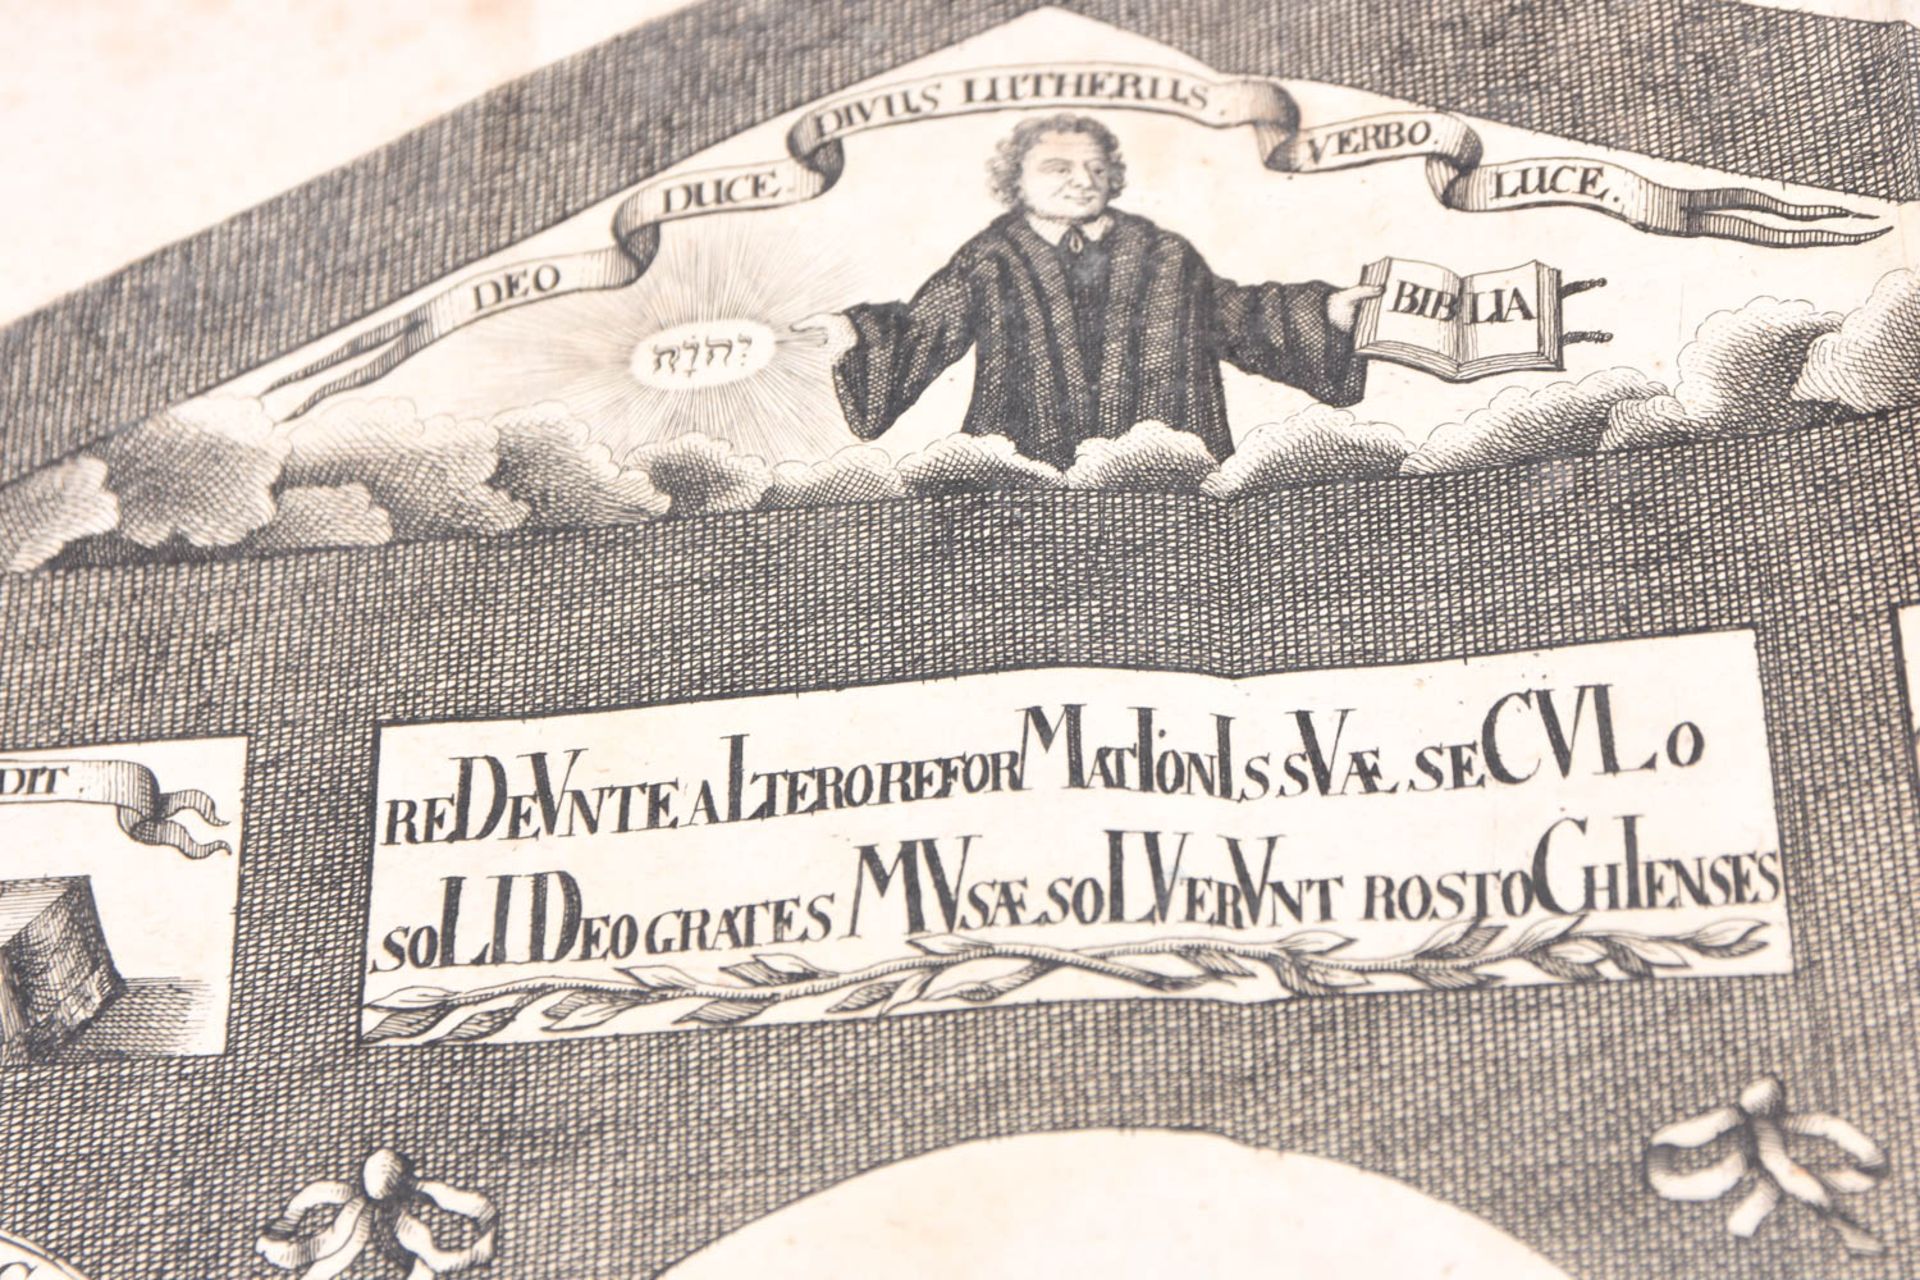 Hilaria Evangelica, 1719 - Image 37 of 47